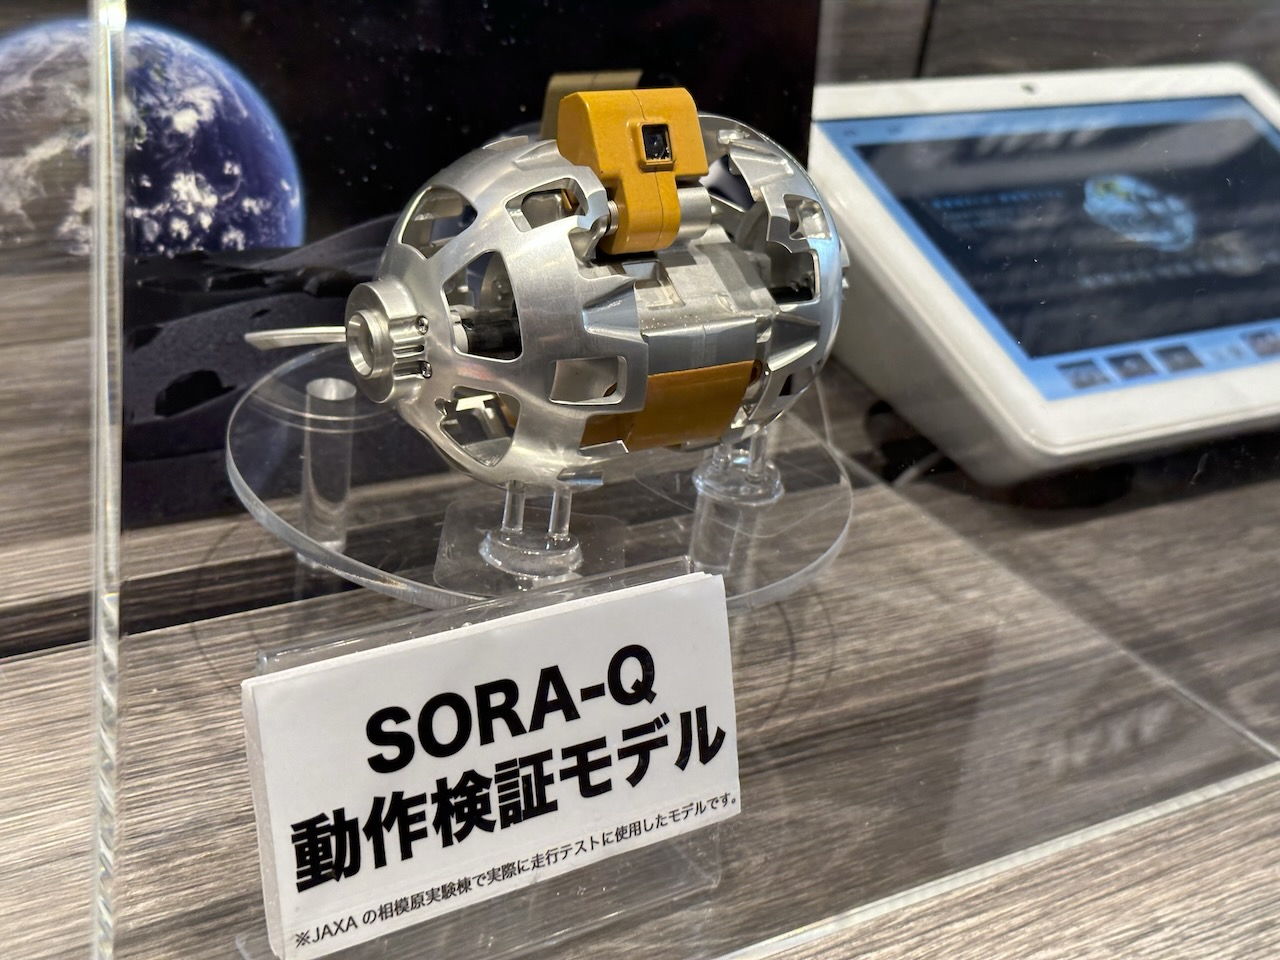 大手玩具メーカーのタカラトミーと、JAXA、タカラトミー、ソニーグループ、同志社大学の共同開発によって生まれた、超小型の変形型月面ロボット「SORA-Q」